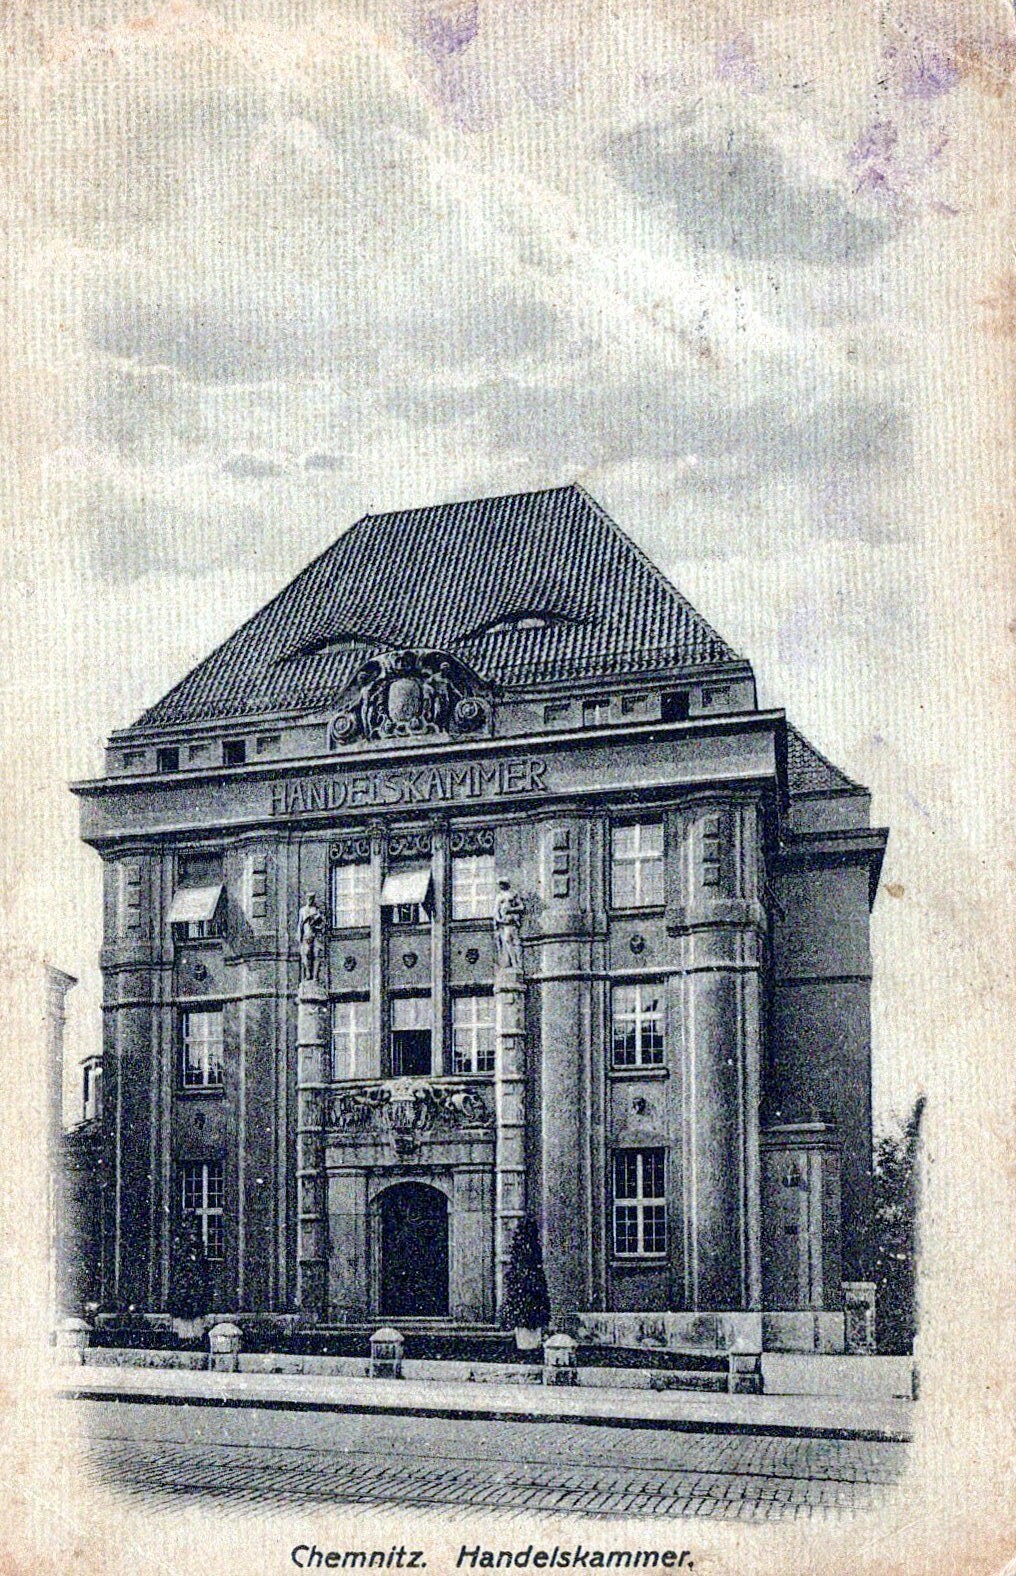 Postkarte: Chemnitz, Handelskammer (Haus Schminke RR-F)